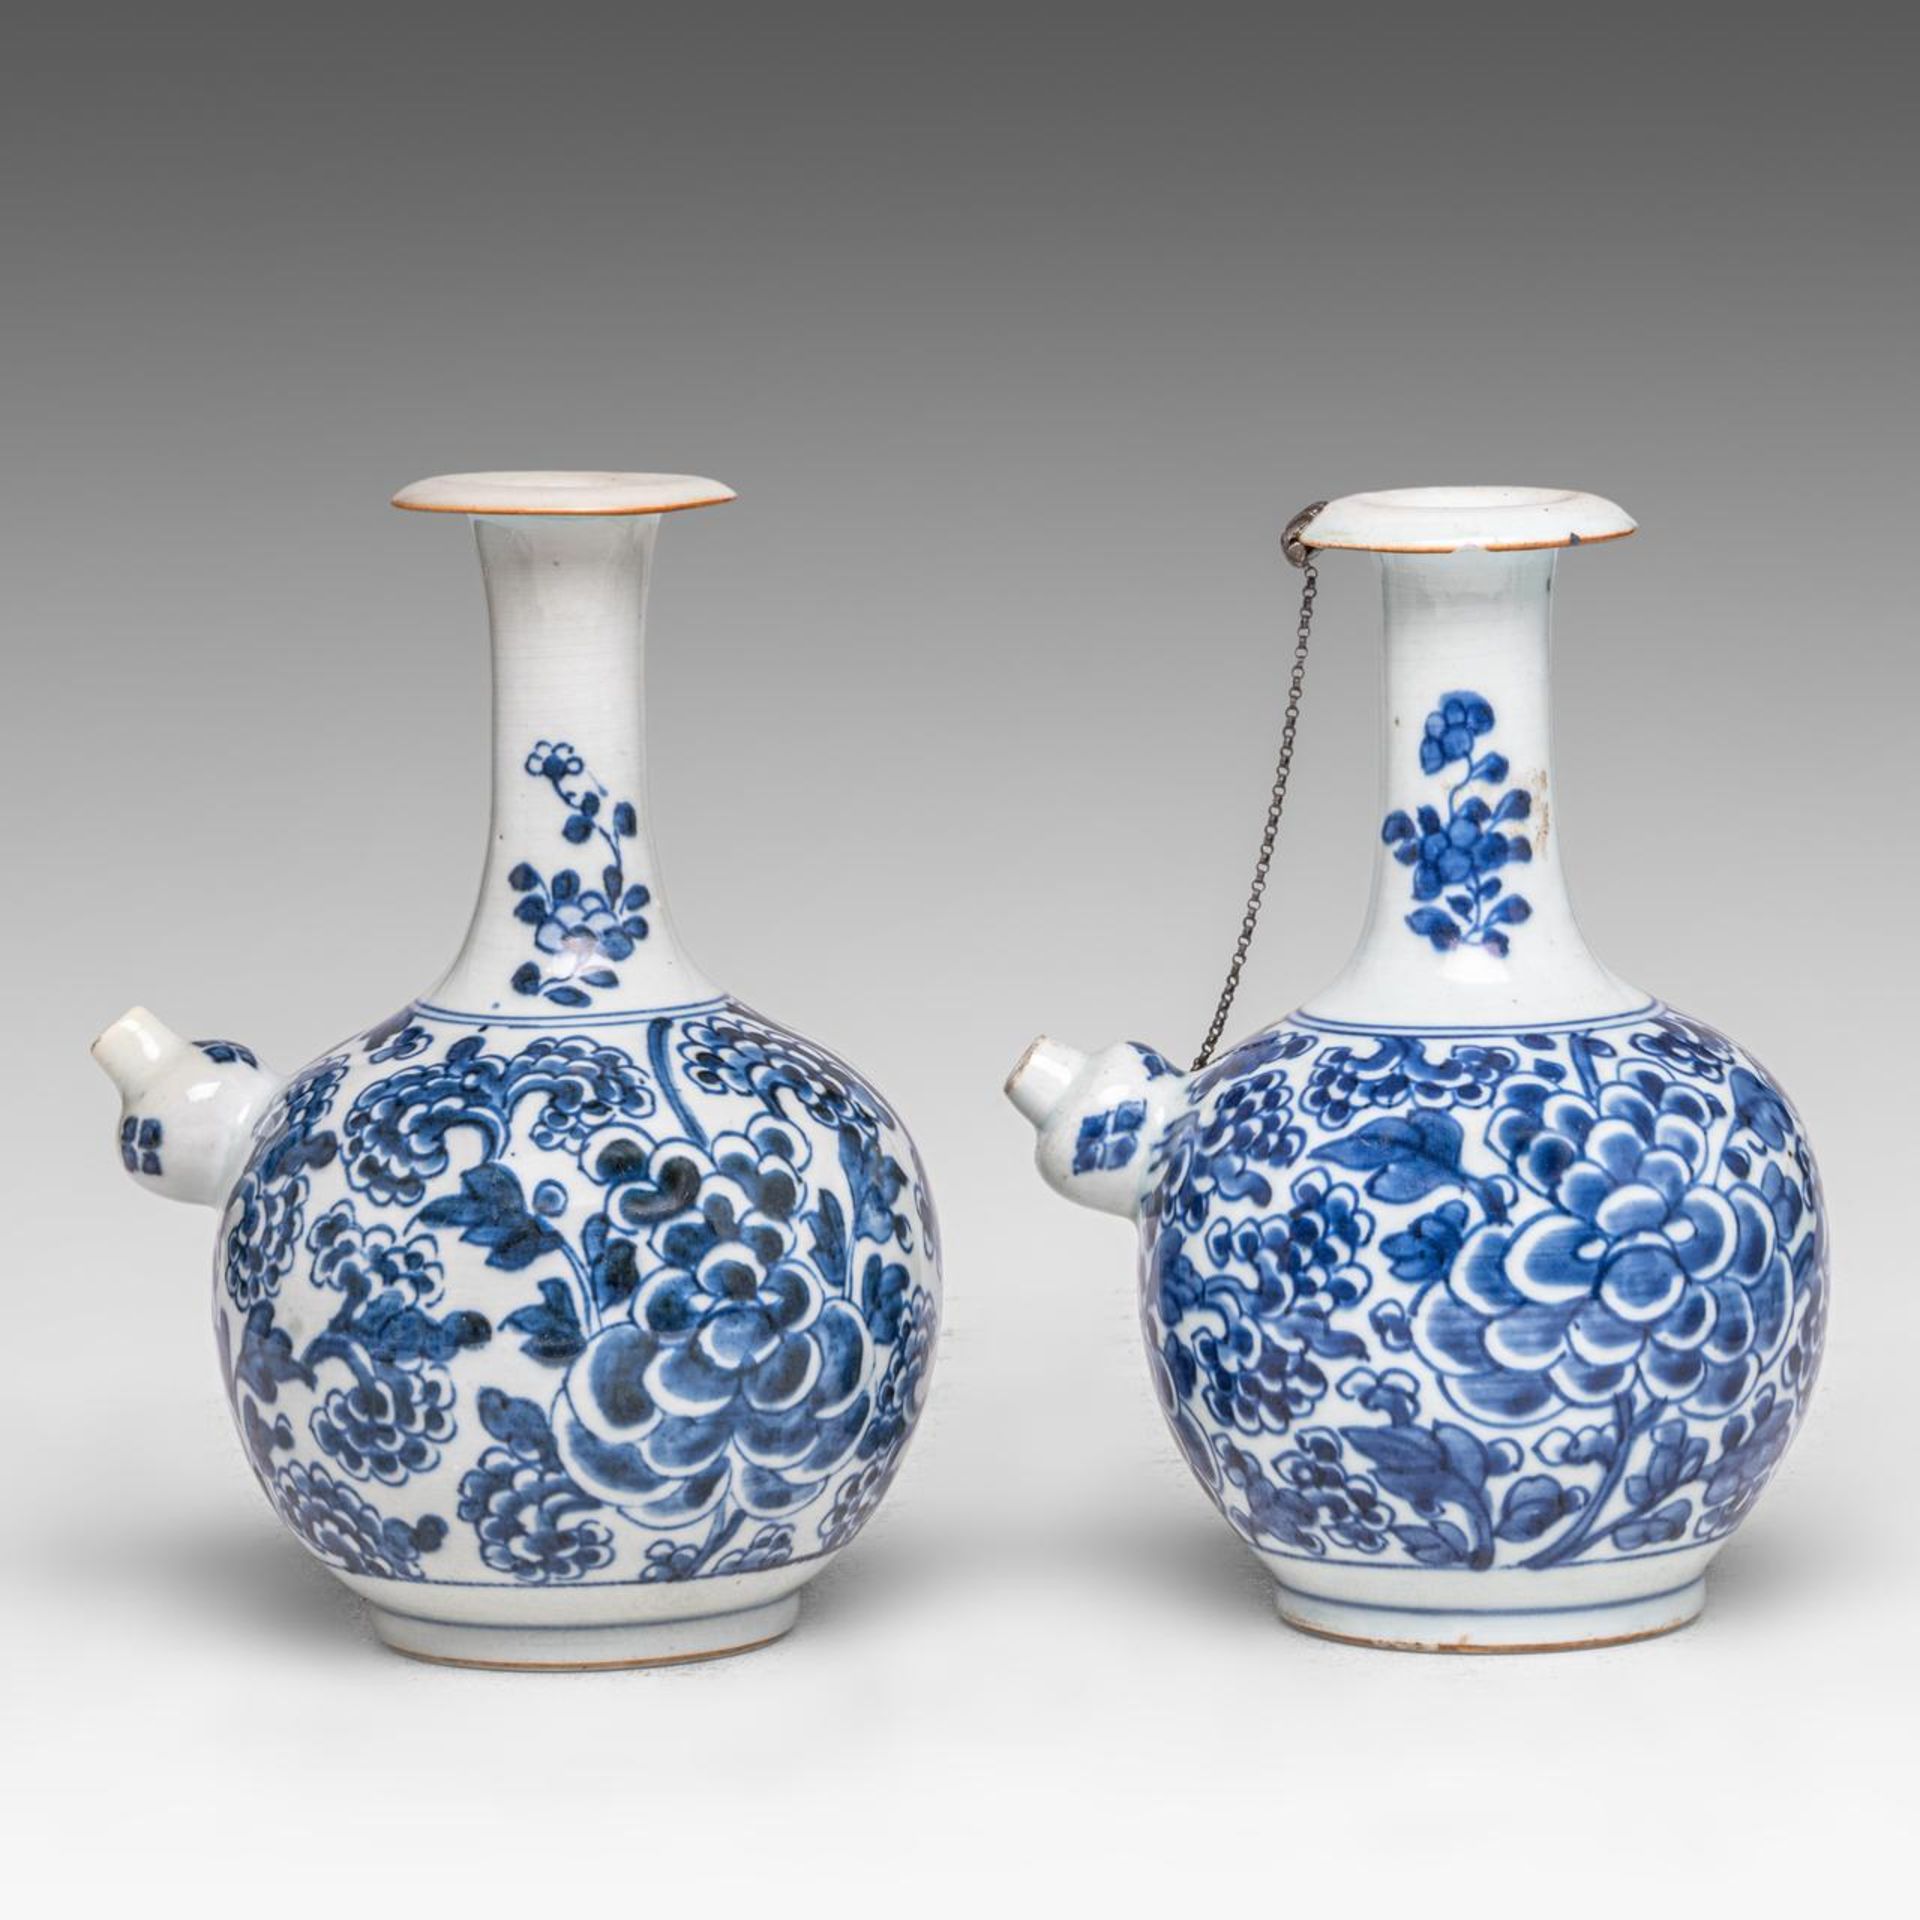 Two Chinese 'Peony scrolls' kendi jugs, Transitional/ Kangxi period, H 20 cm - Image 2 of 7